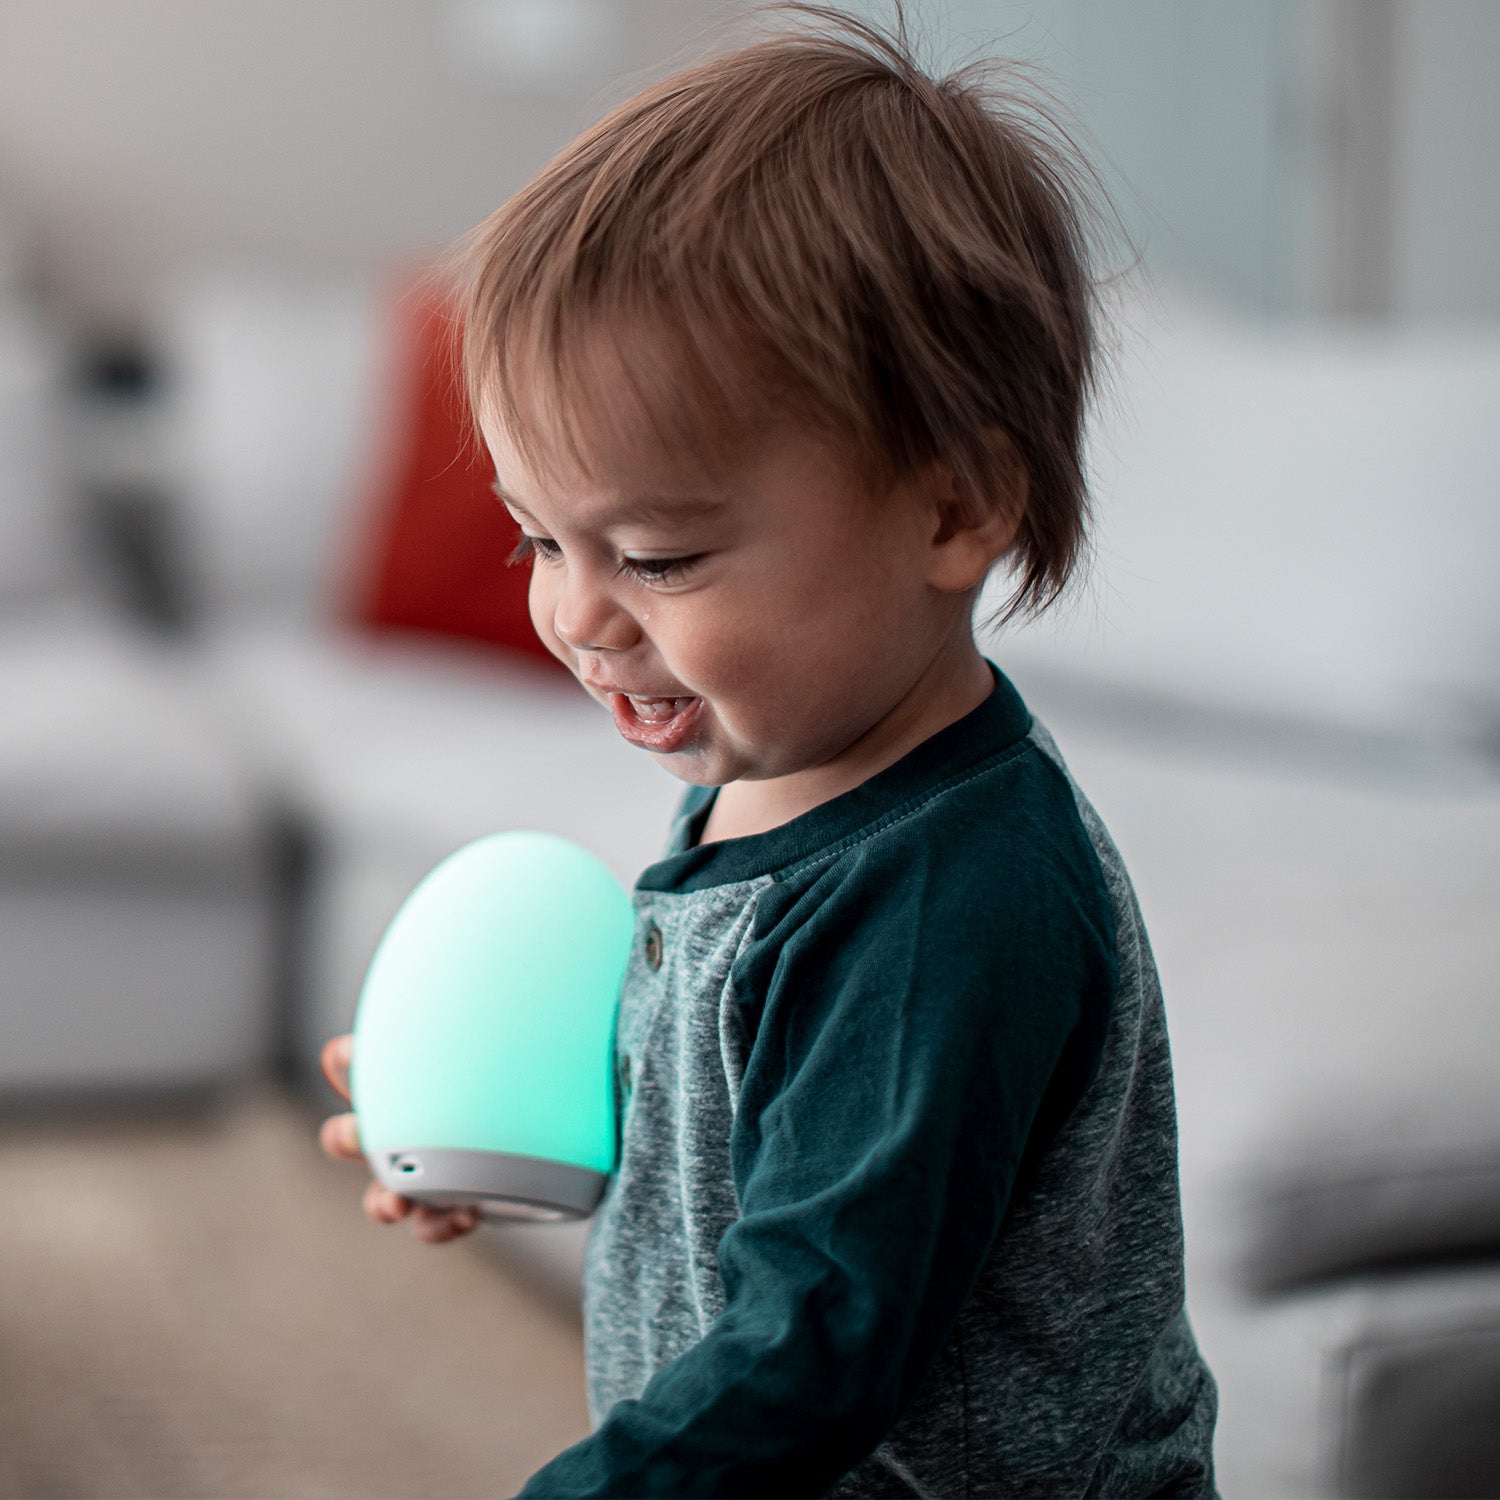 VAVA LED Nachtlicht für Kinder, Nachtlicht Kind USB